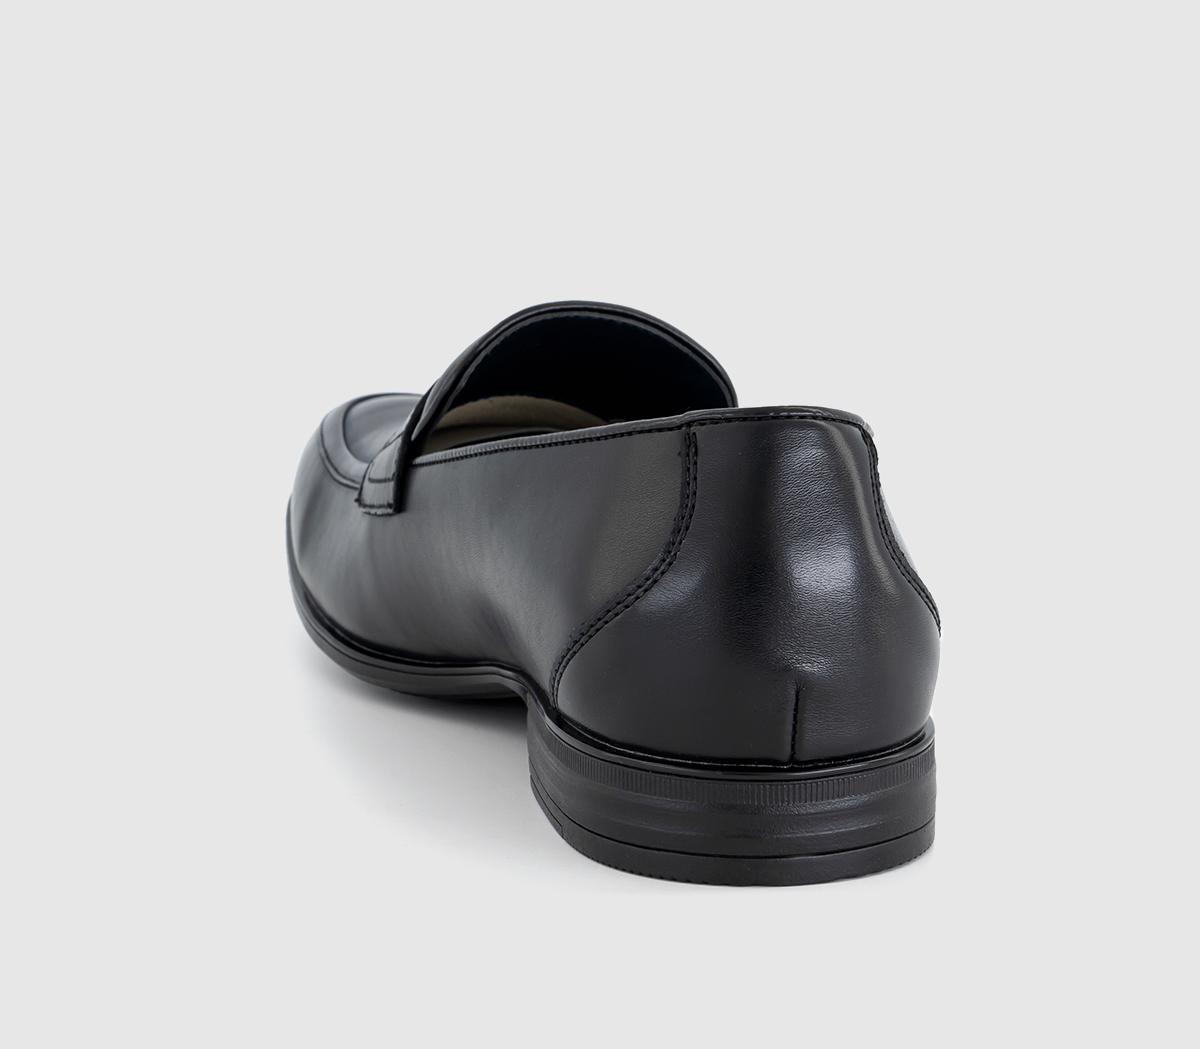 OFFICE Manning Saddle Loafers Black - Men’s Smart Shoes